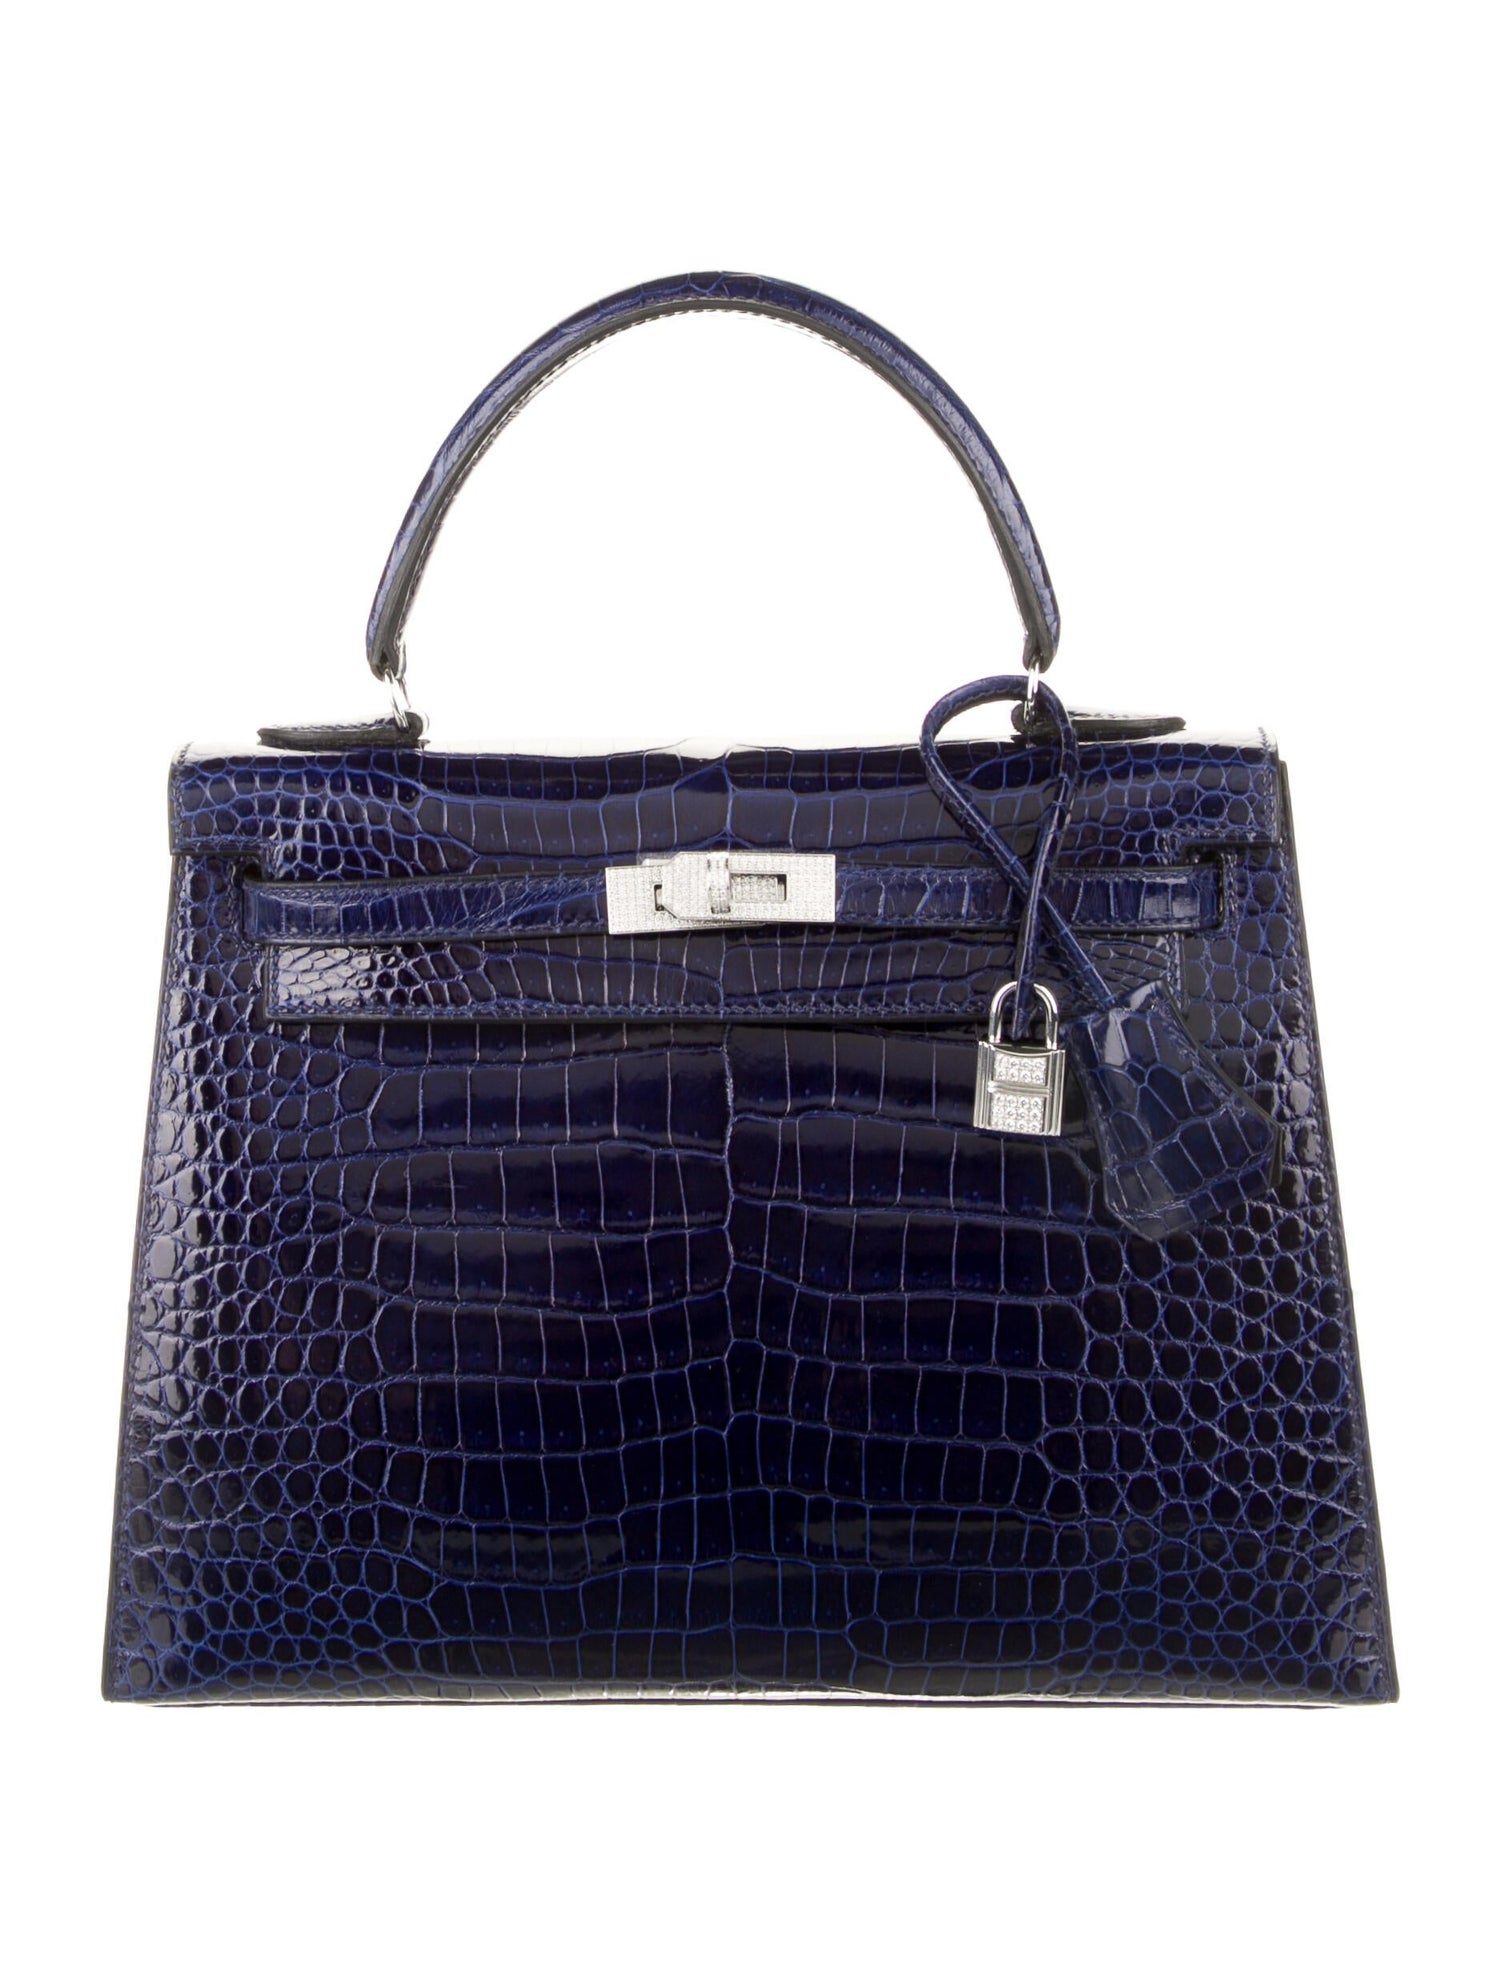 Sac Hermès Shiny Porosus Crocodile Kelly Sellier 32 bleu foncé